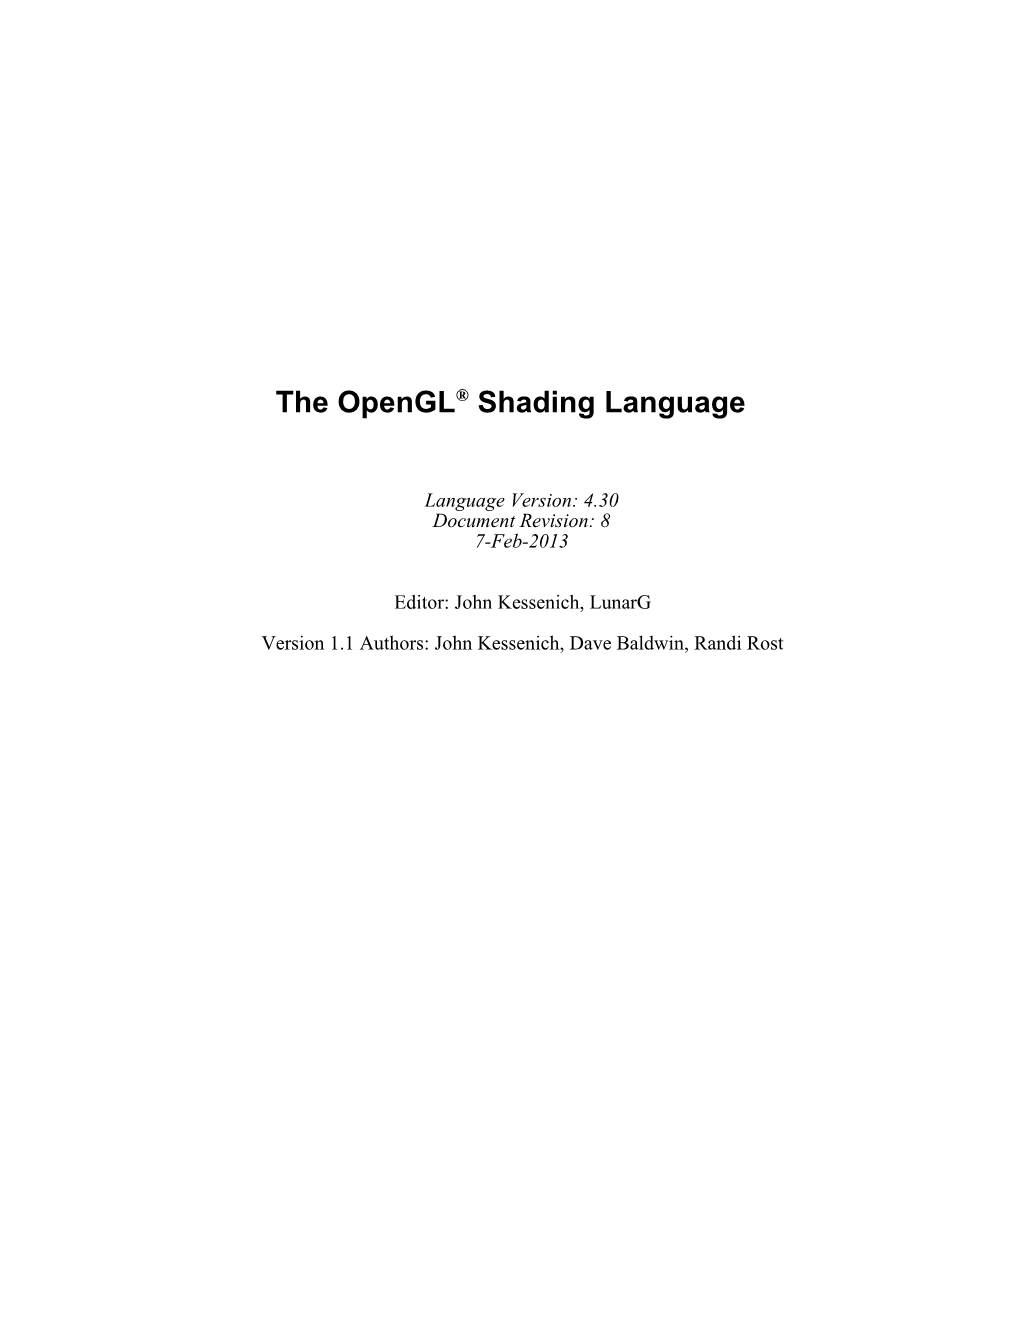 The Opengl Shading Language